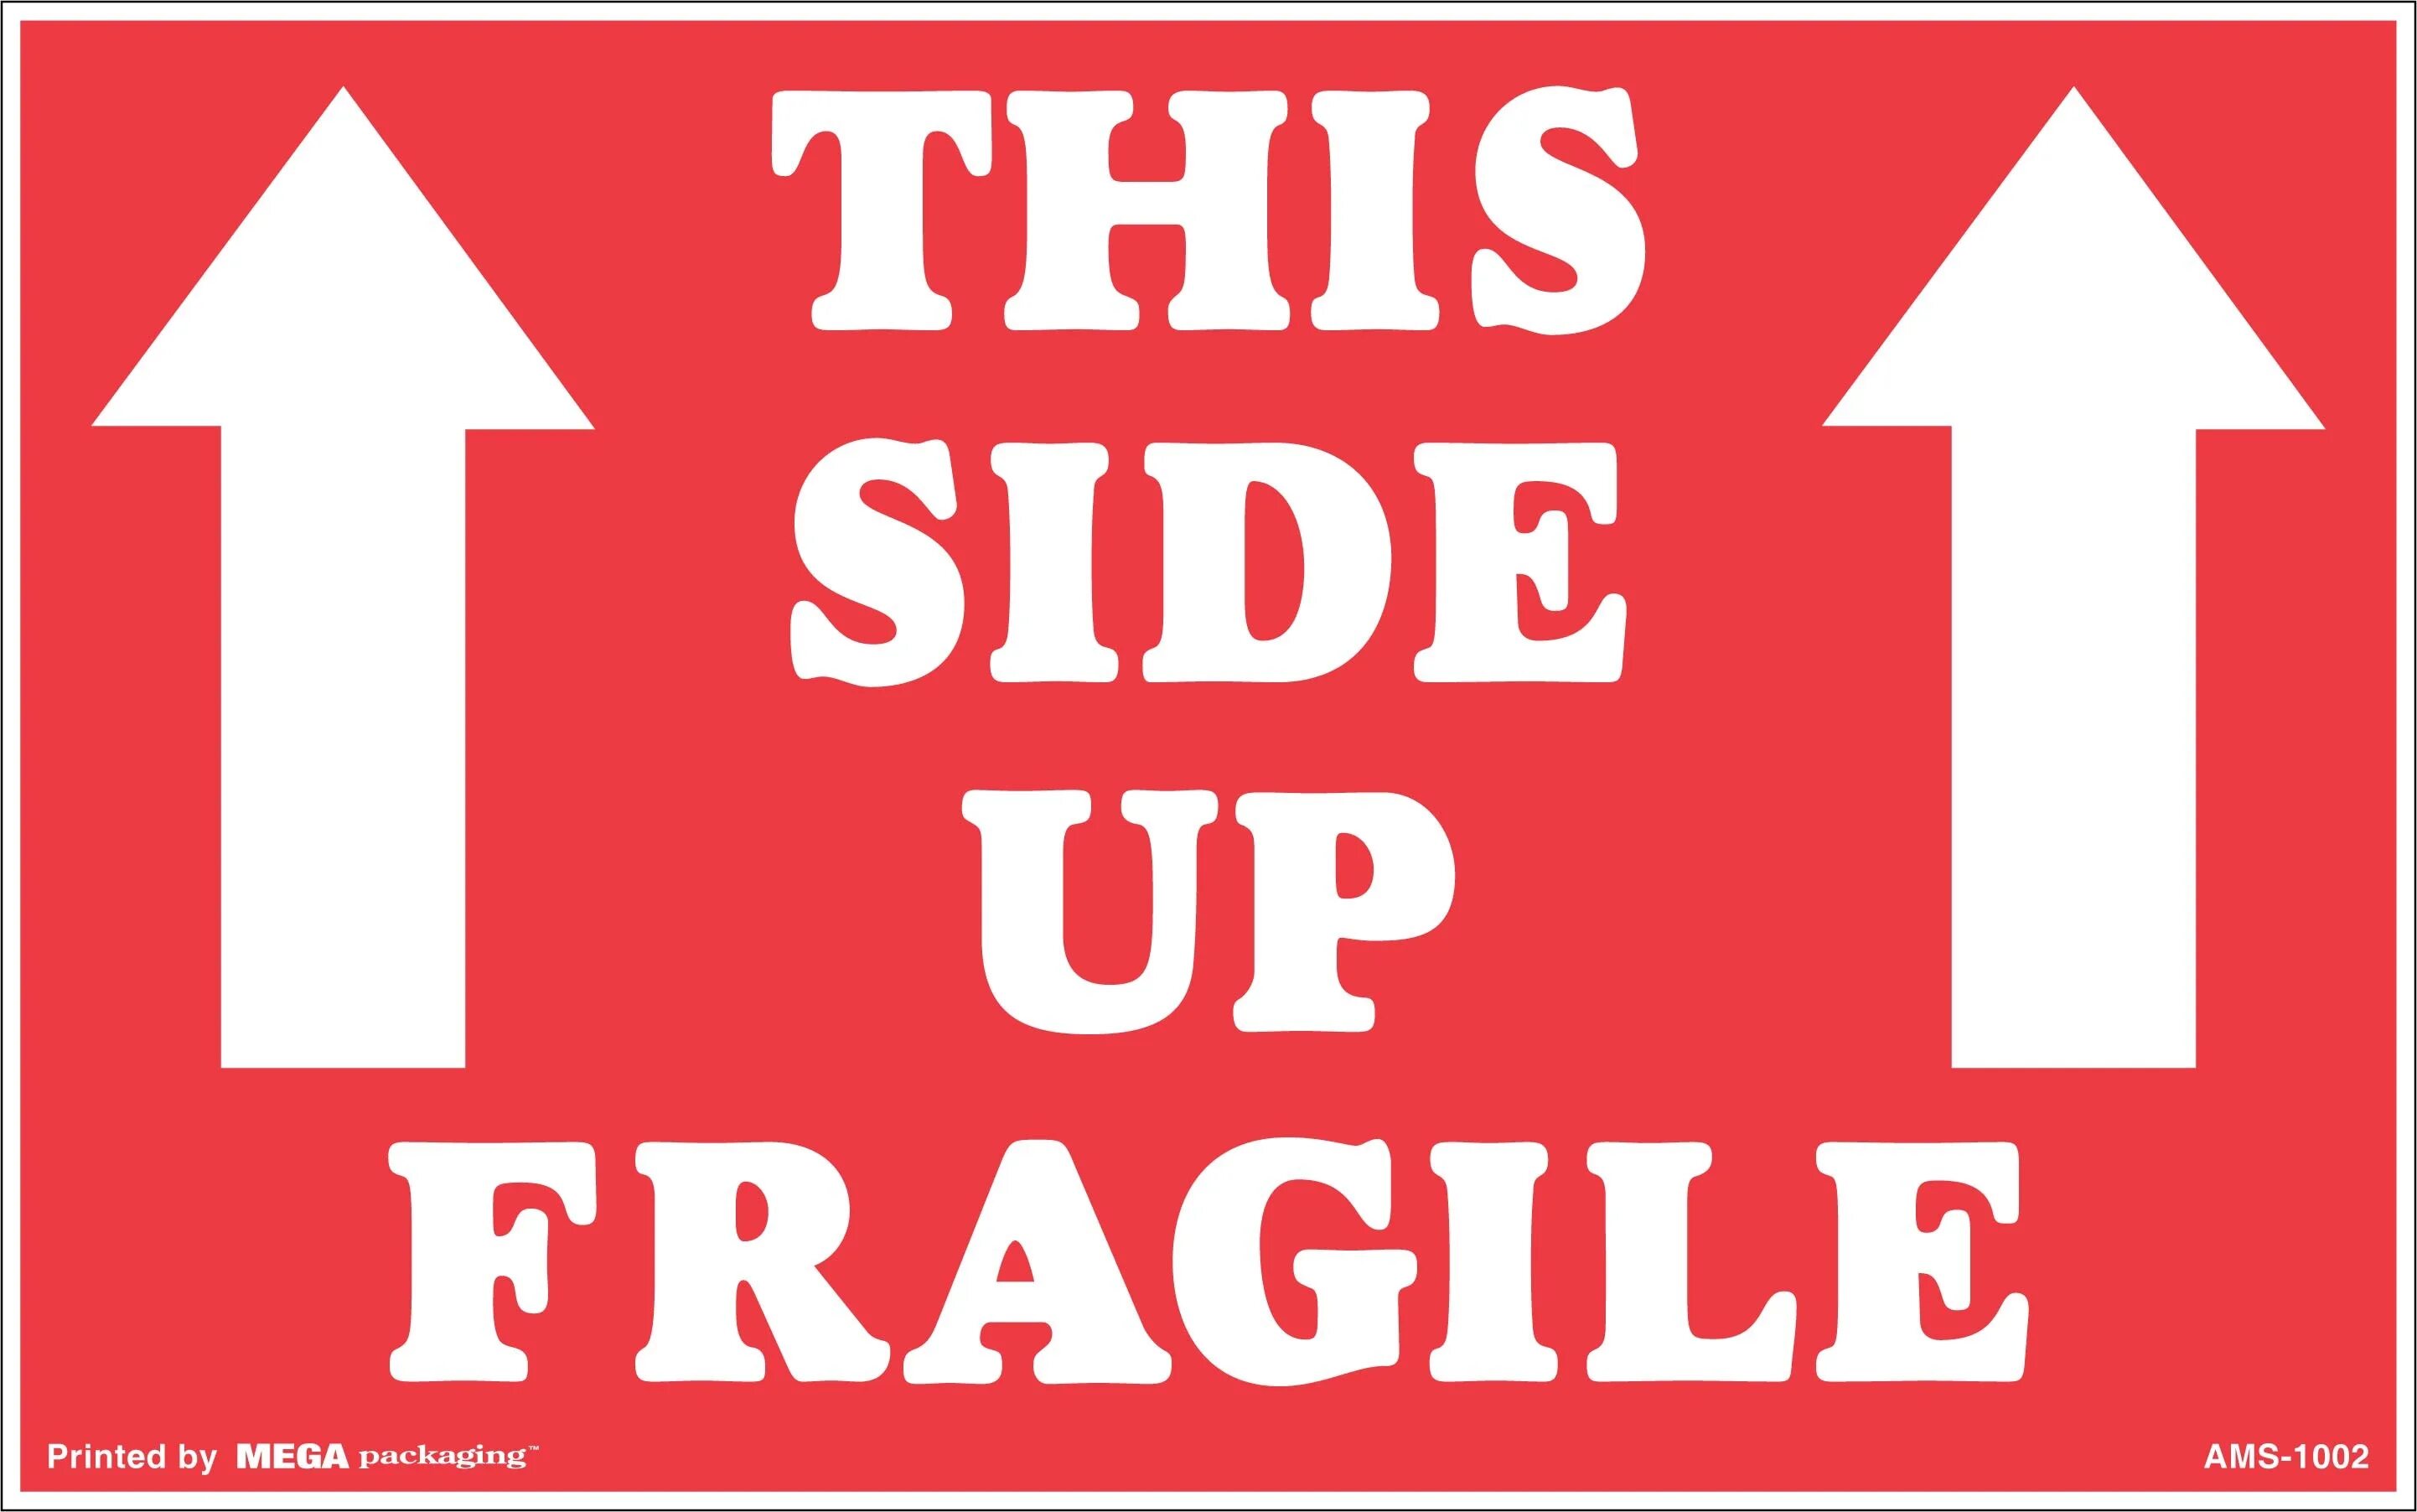 Наклейка this Side up. Наклейки fragile this Side up. Хрупкое наклейка. This way up up наклейка.